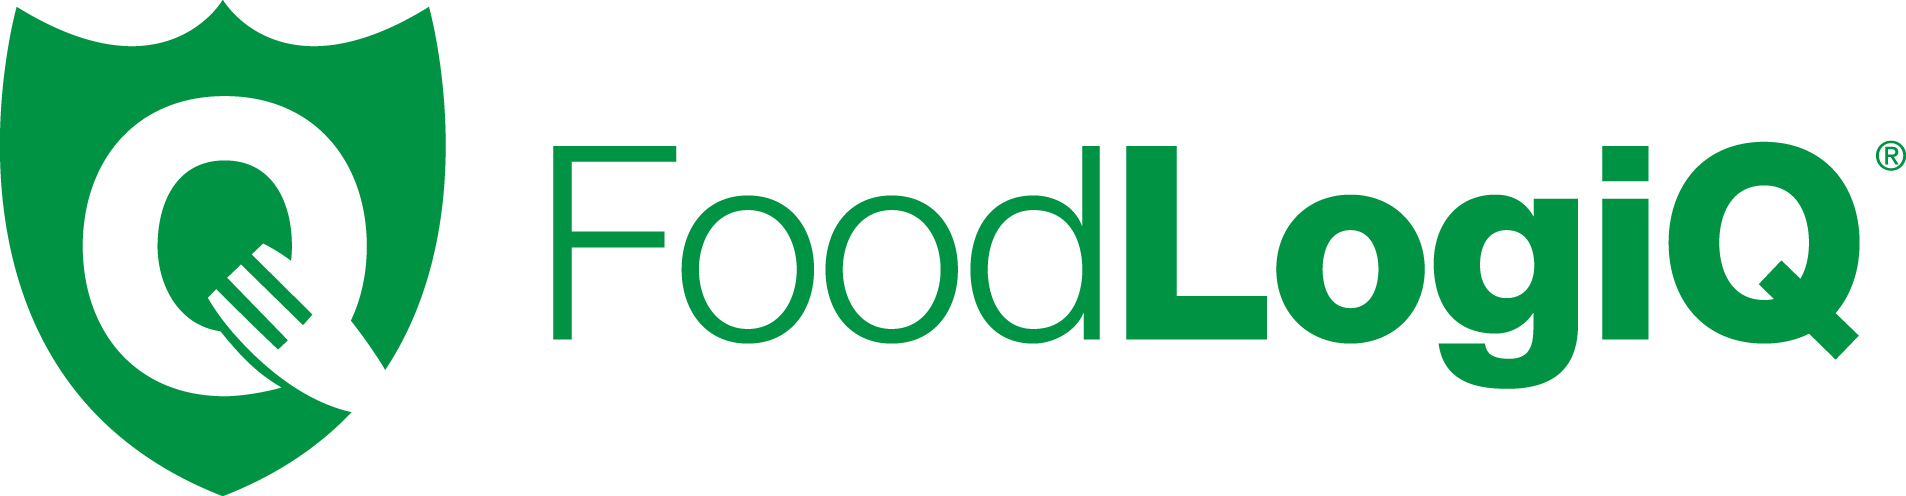 FoodLogiQ is Named t